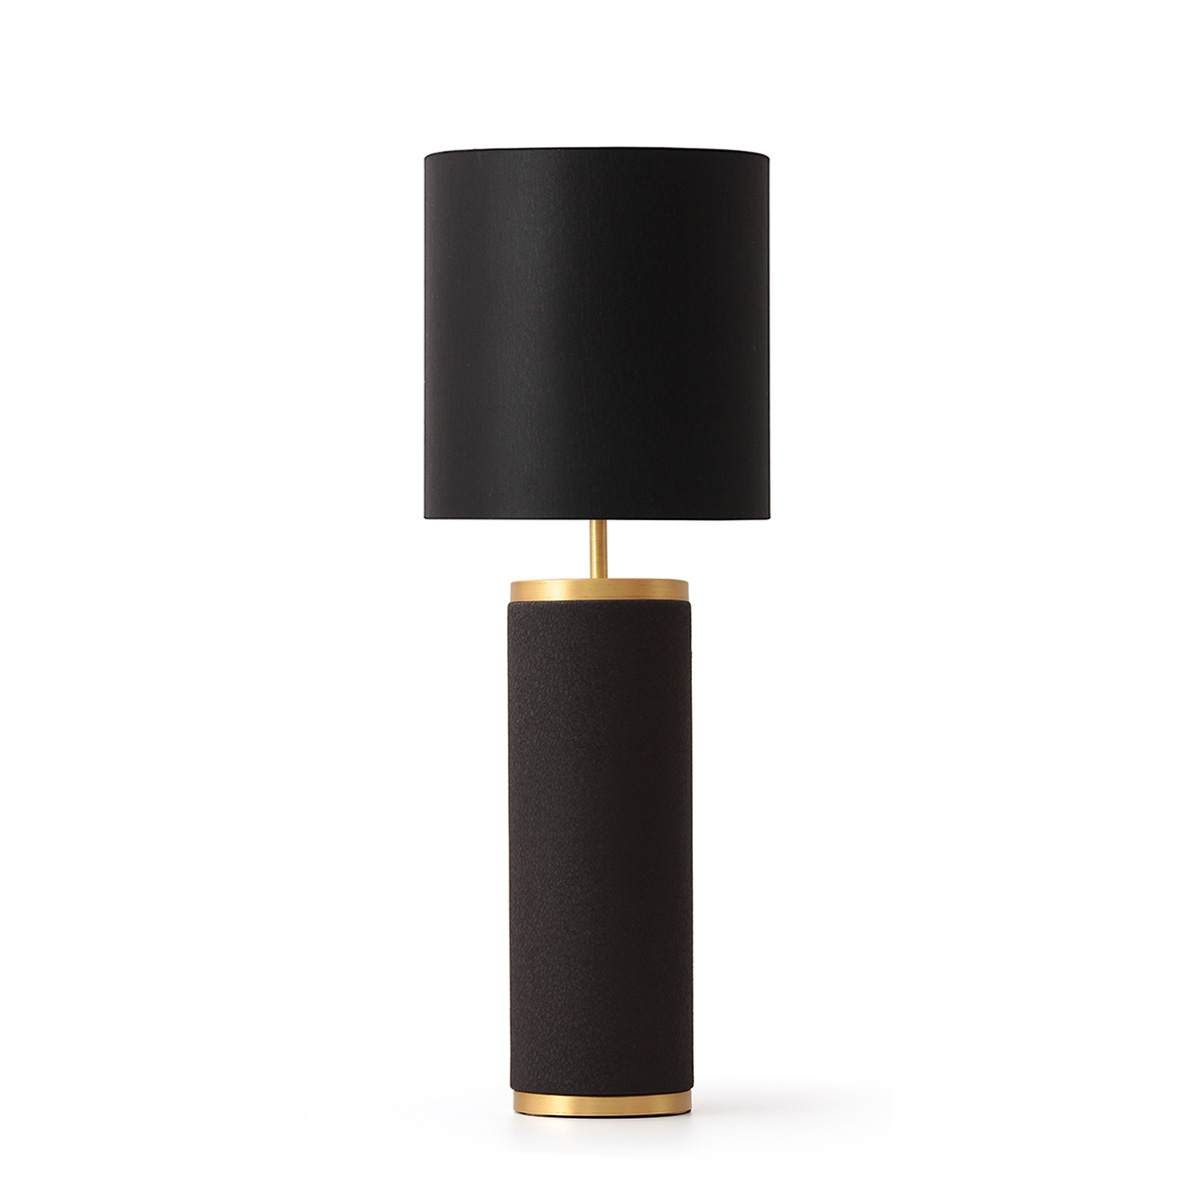 Μαύρη επιτραπέζια λάμπα BASIKI black table lamp